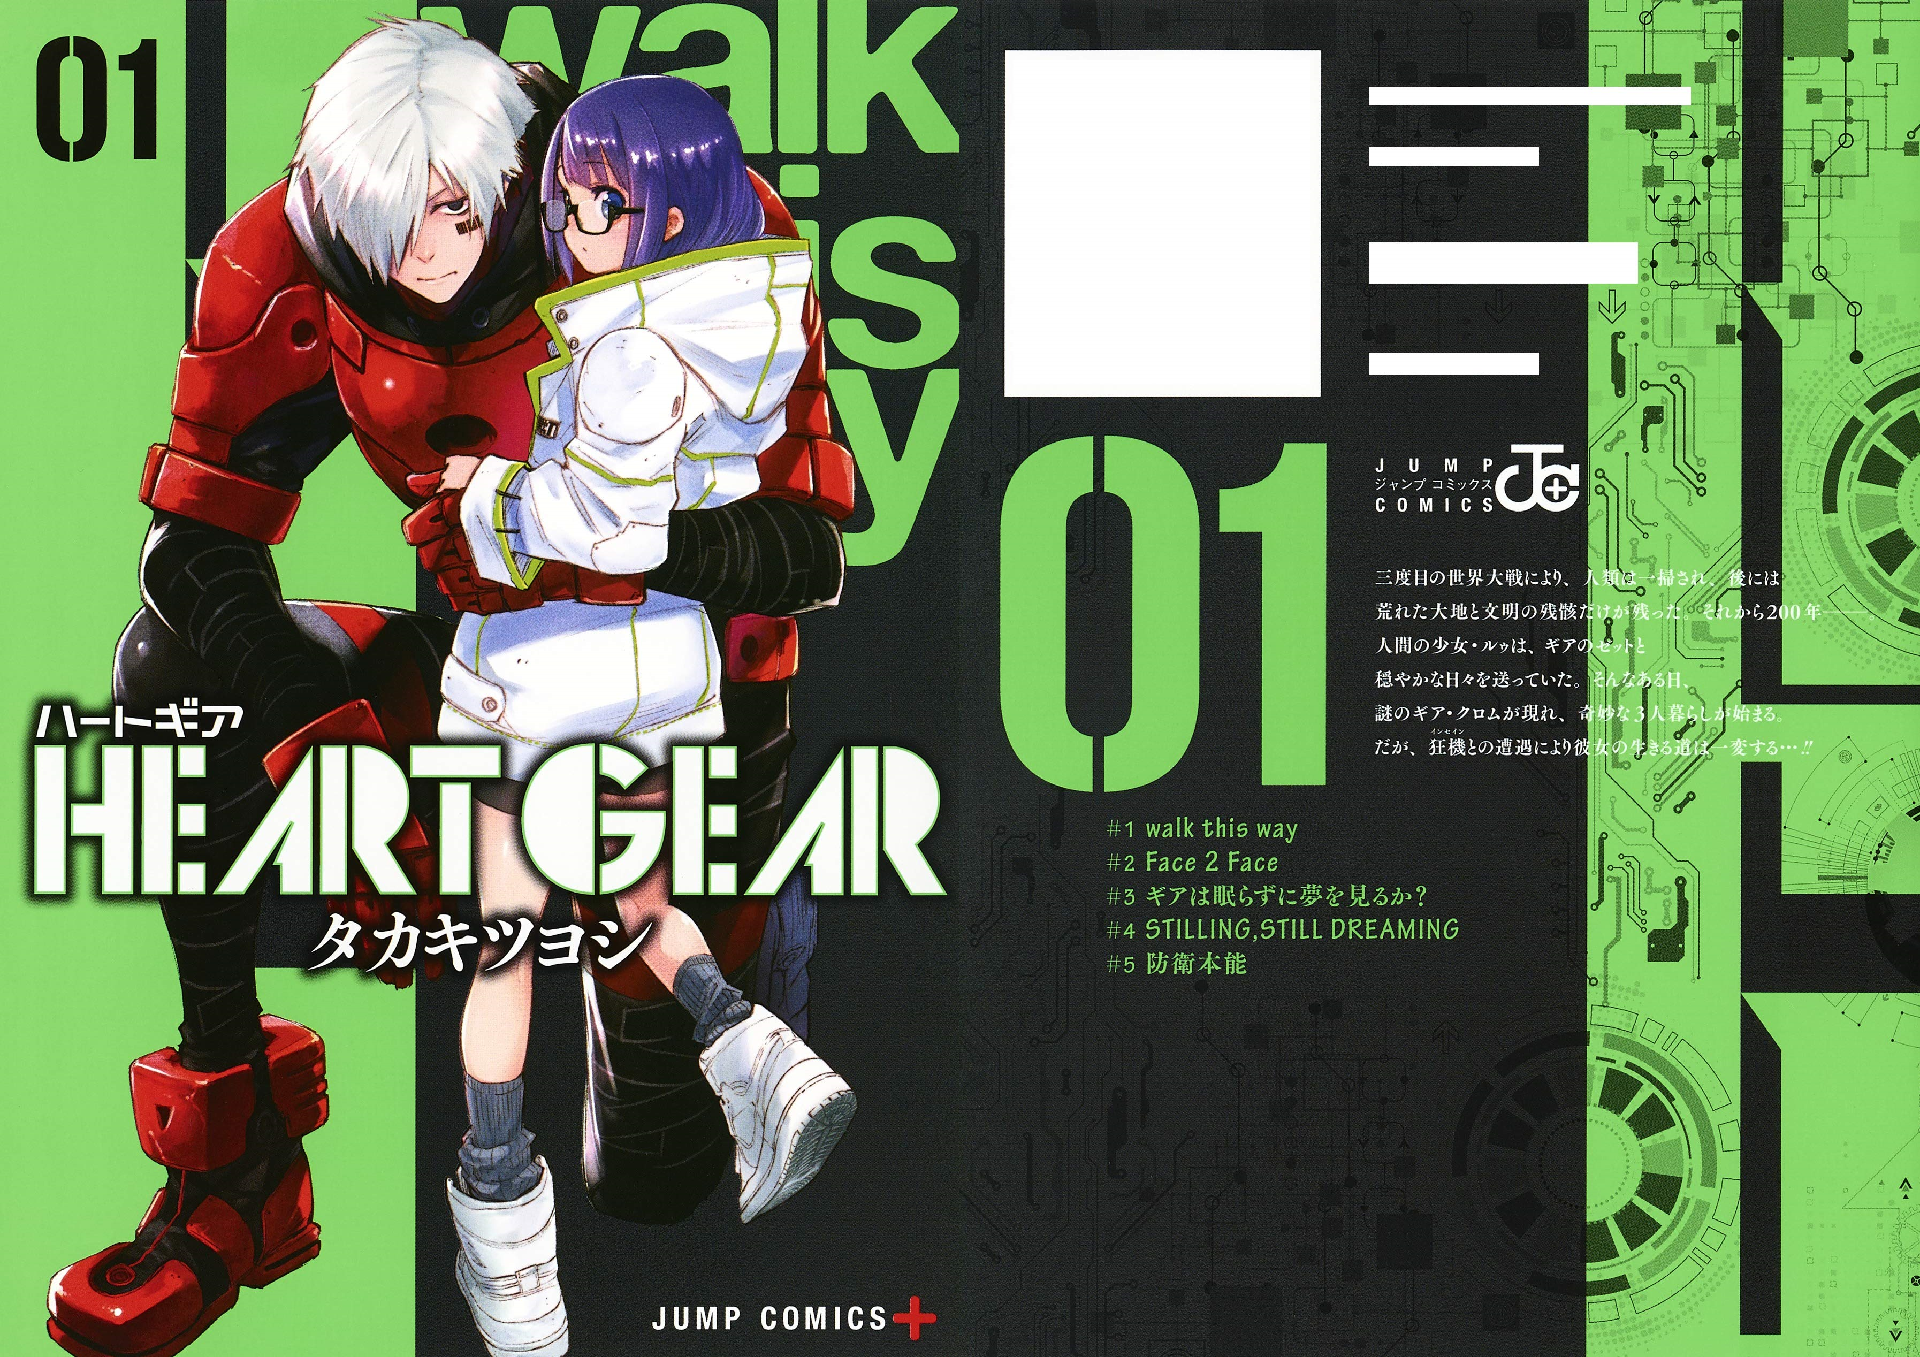 Heart Gear Manga Heart Gear Wiki Fandom